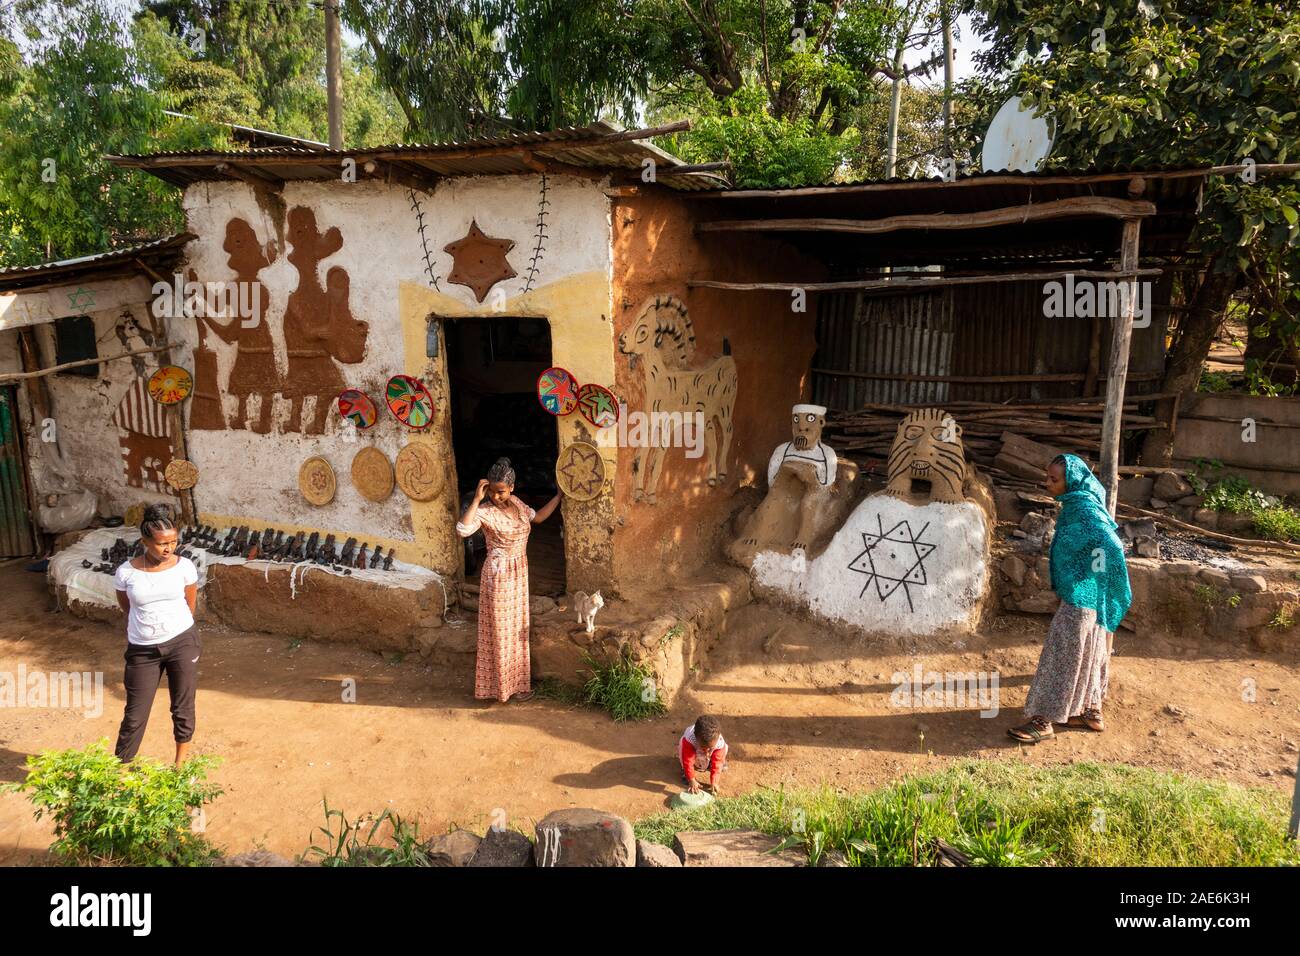 Etiopia, Amhara Region, Gondar, Wolleka Falasha villaggio ebraico, decorata negozio artigiano con la stella di Davide Foto Stock